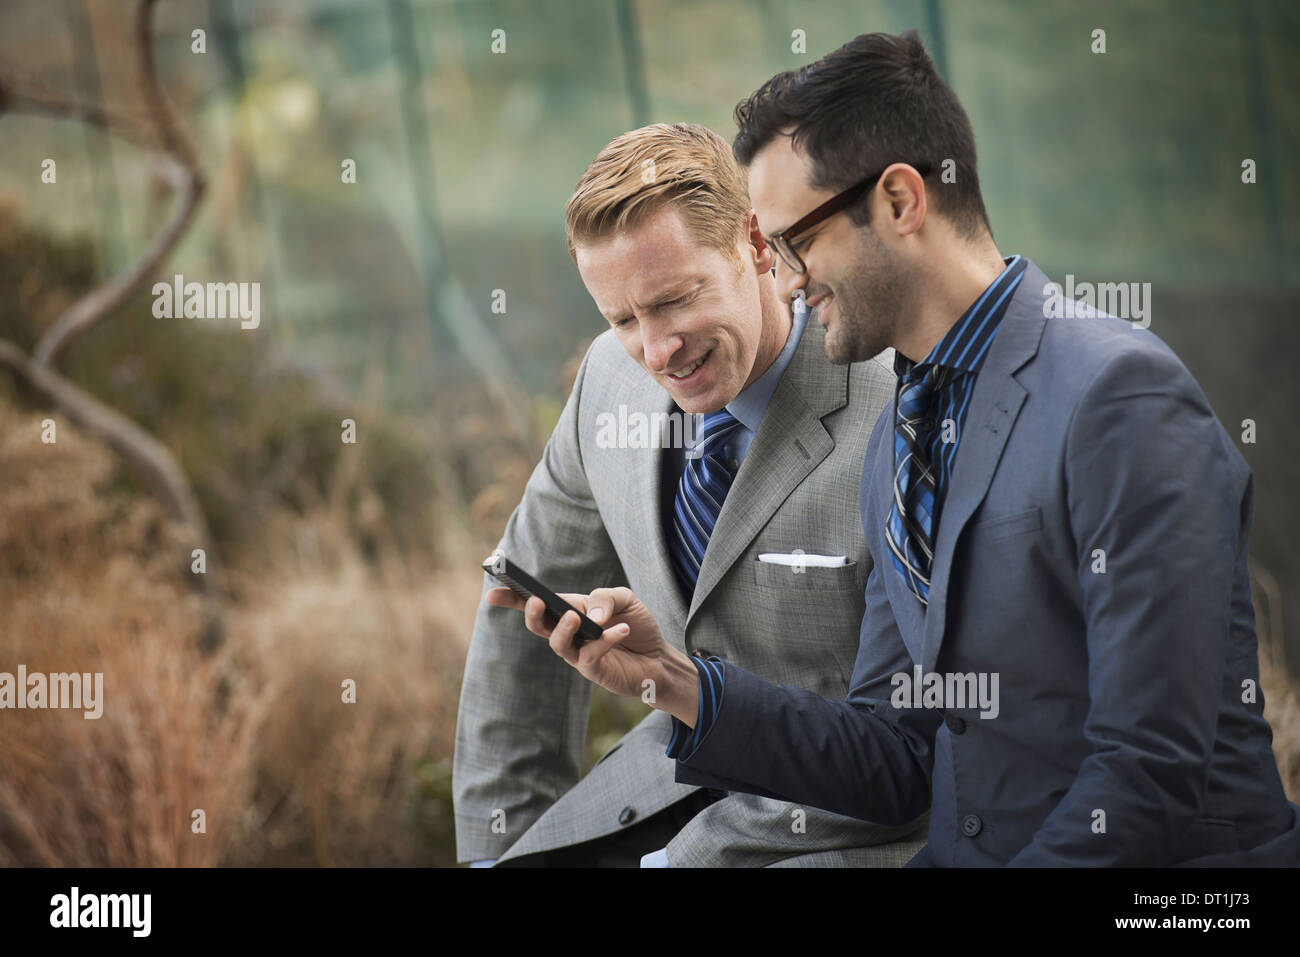 Deux hommes en vêtements d'affaires officiel côte à côte en regardant un écran de téléphone cellulaire ou un téléphone mobile Banque D'Images